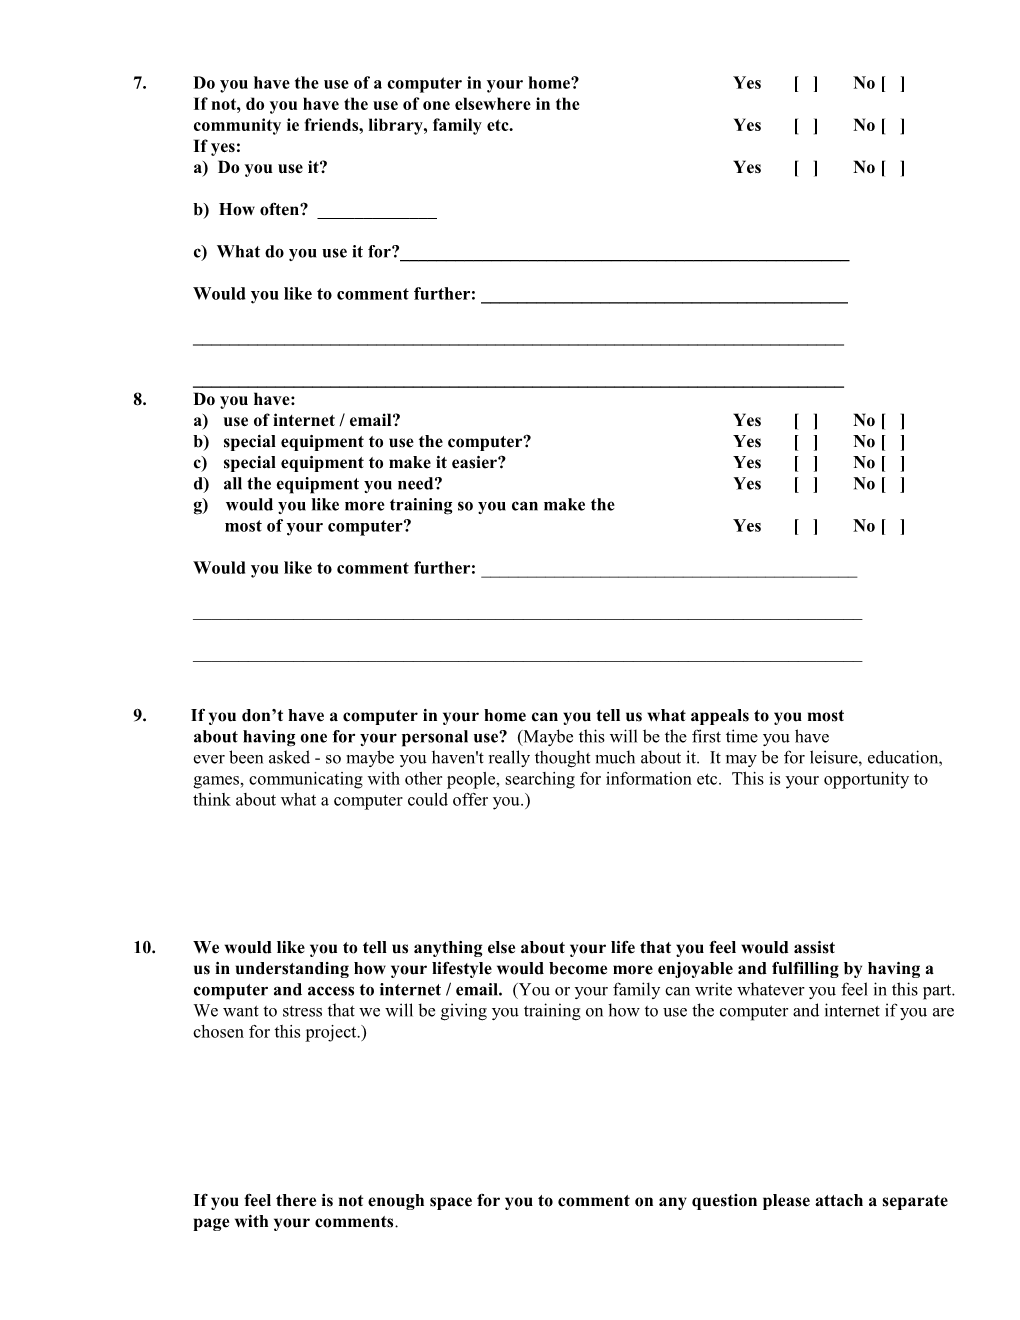 Attachment 1 - Questionnaire (HREOC - 8-11-99)